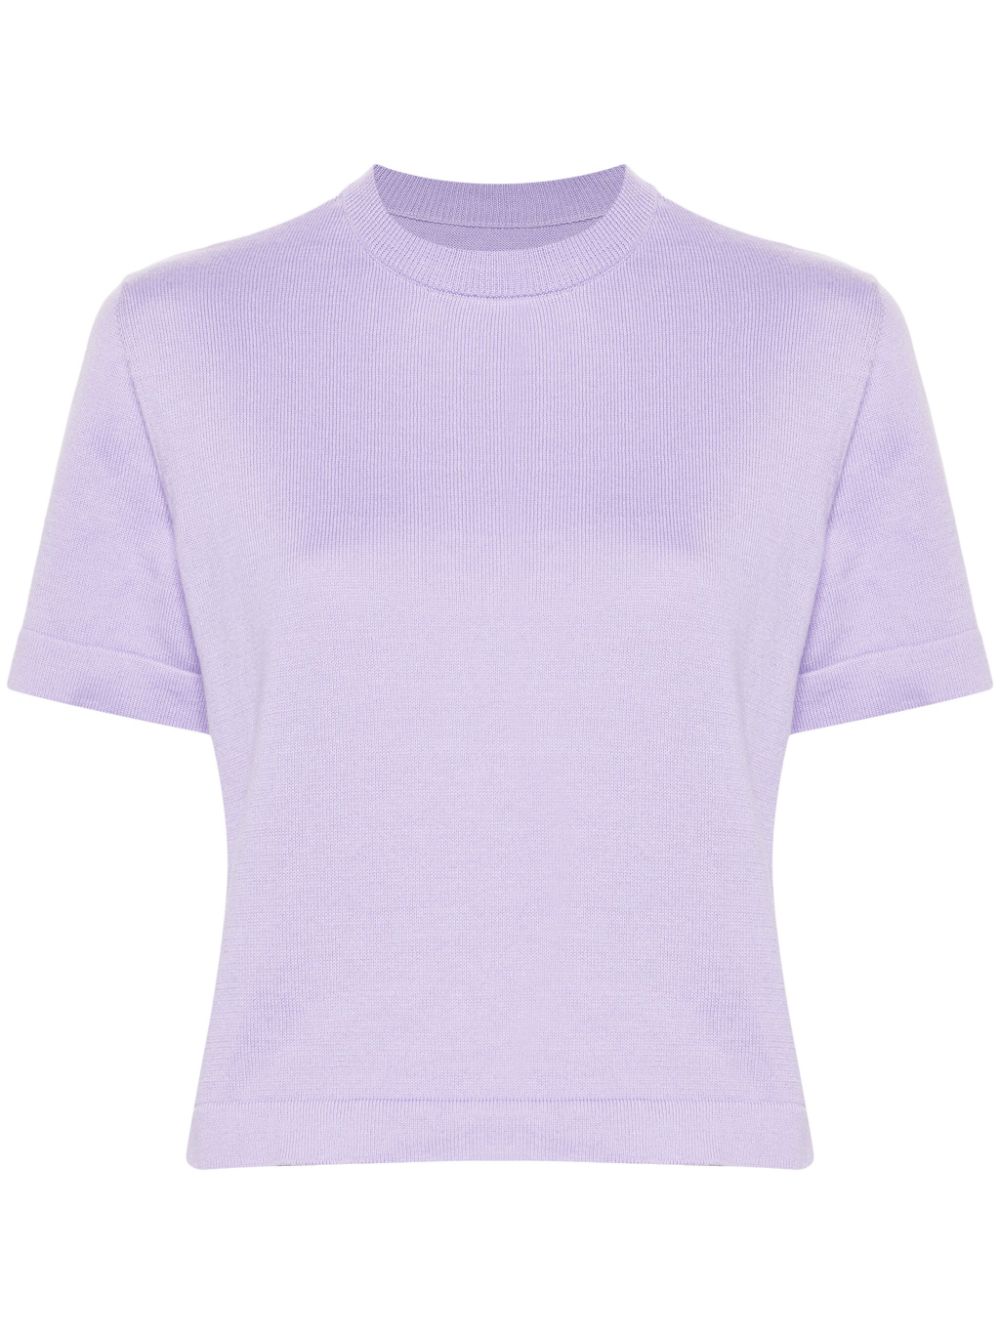 Image 1 of Cordera fine-knit cotton T-shirt